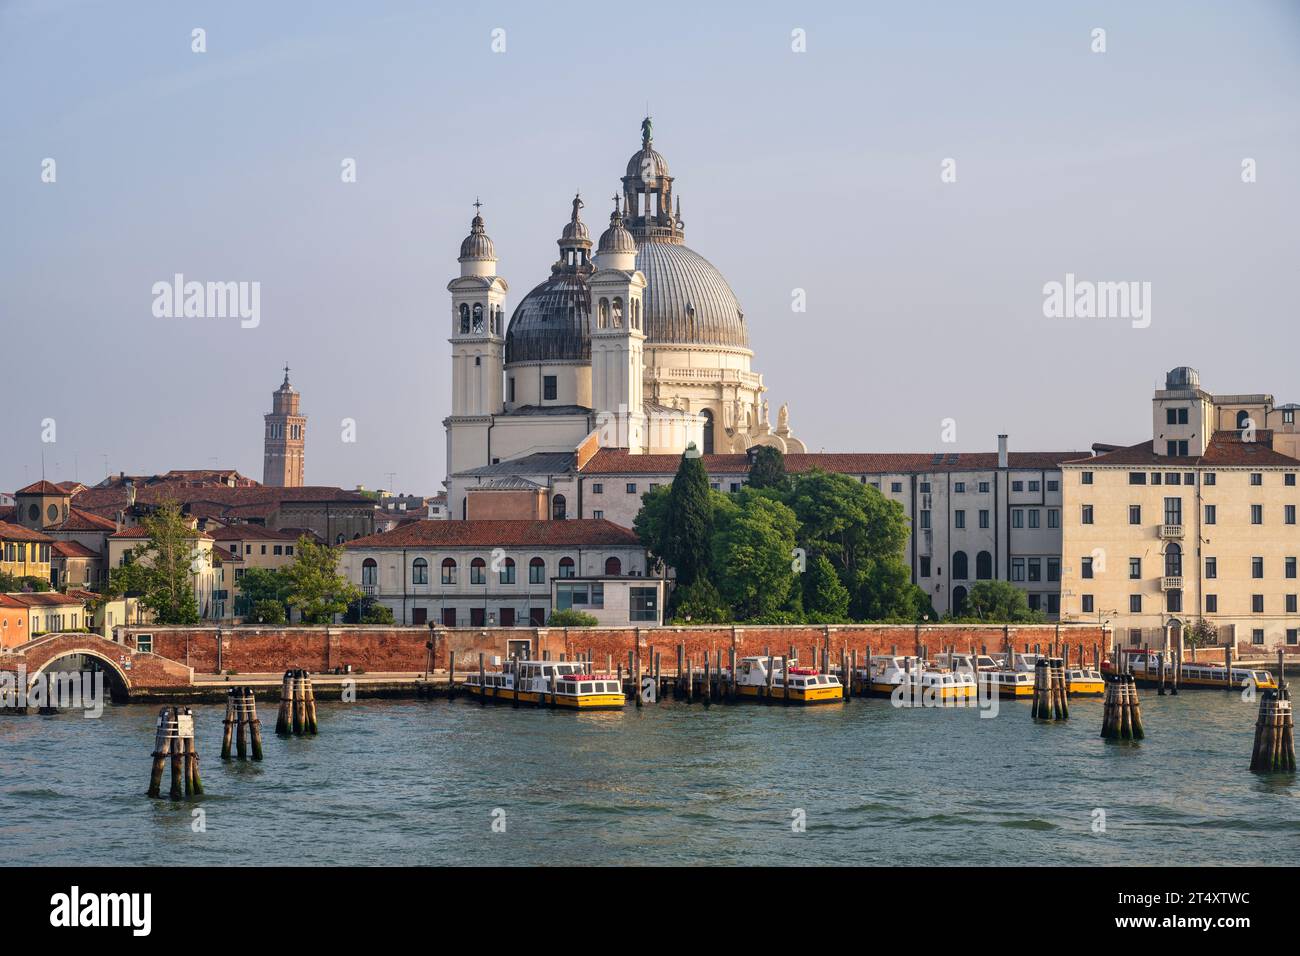 Basilika di Santa Maria della Salute vom Canale della Giudecca aus gesehen, mit Fähren an der Promenade Zattere in Venedig, Region Veneto, Italien Stockfoto